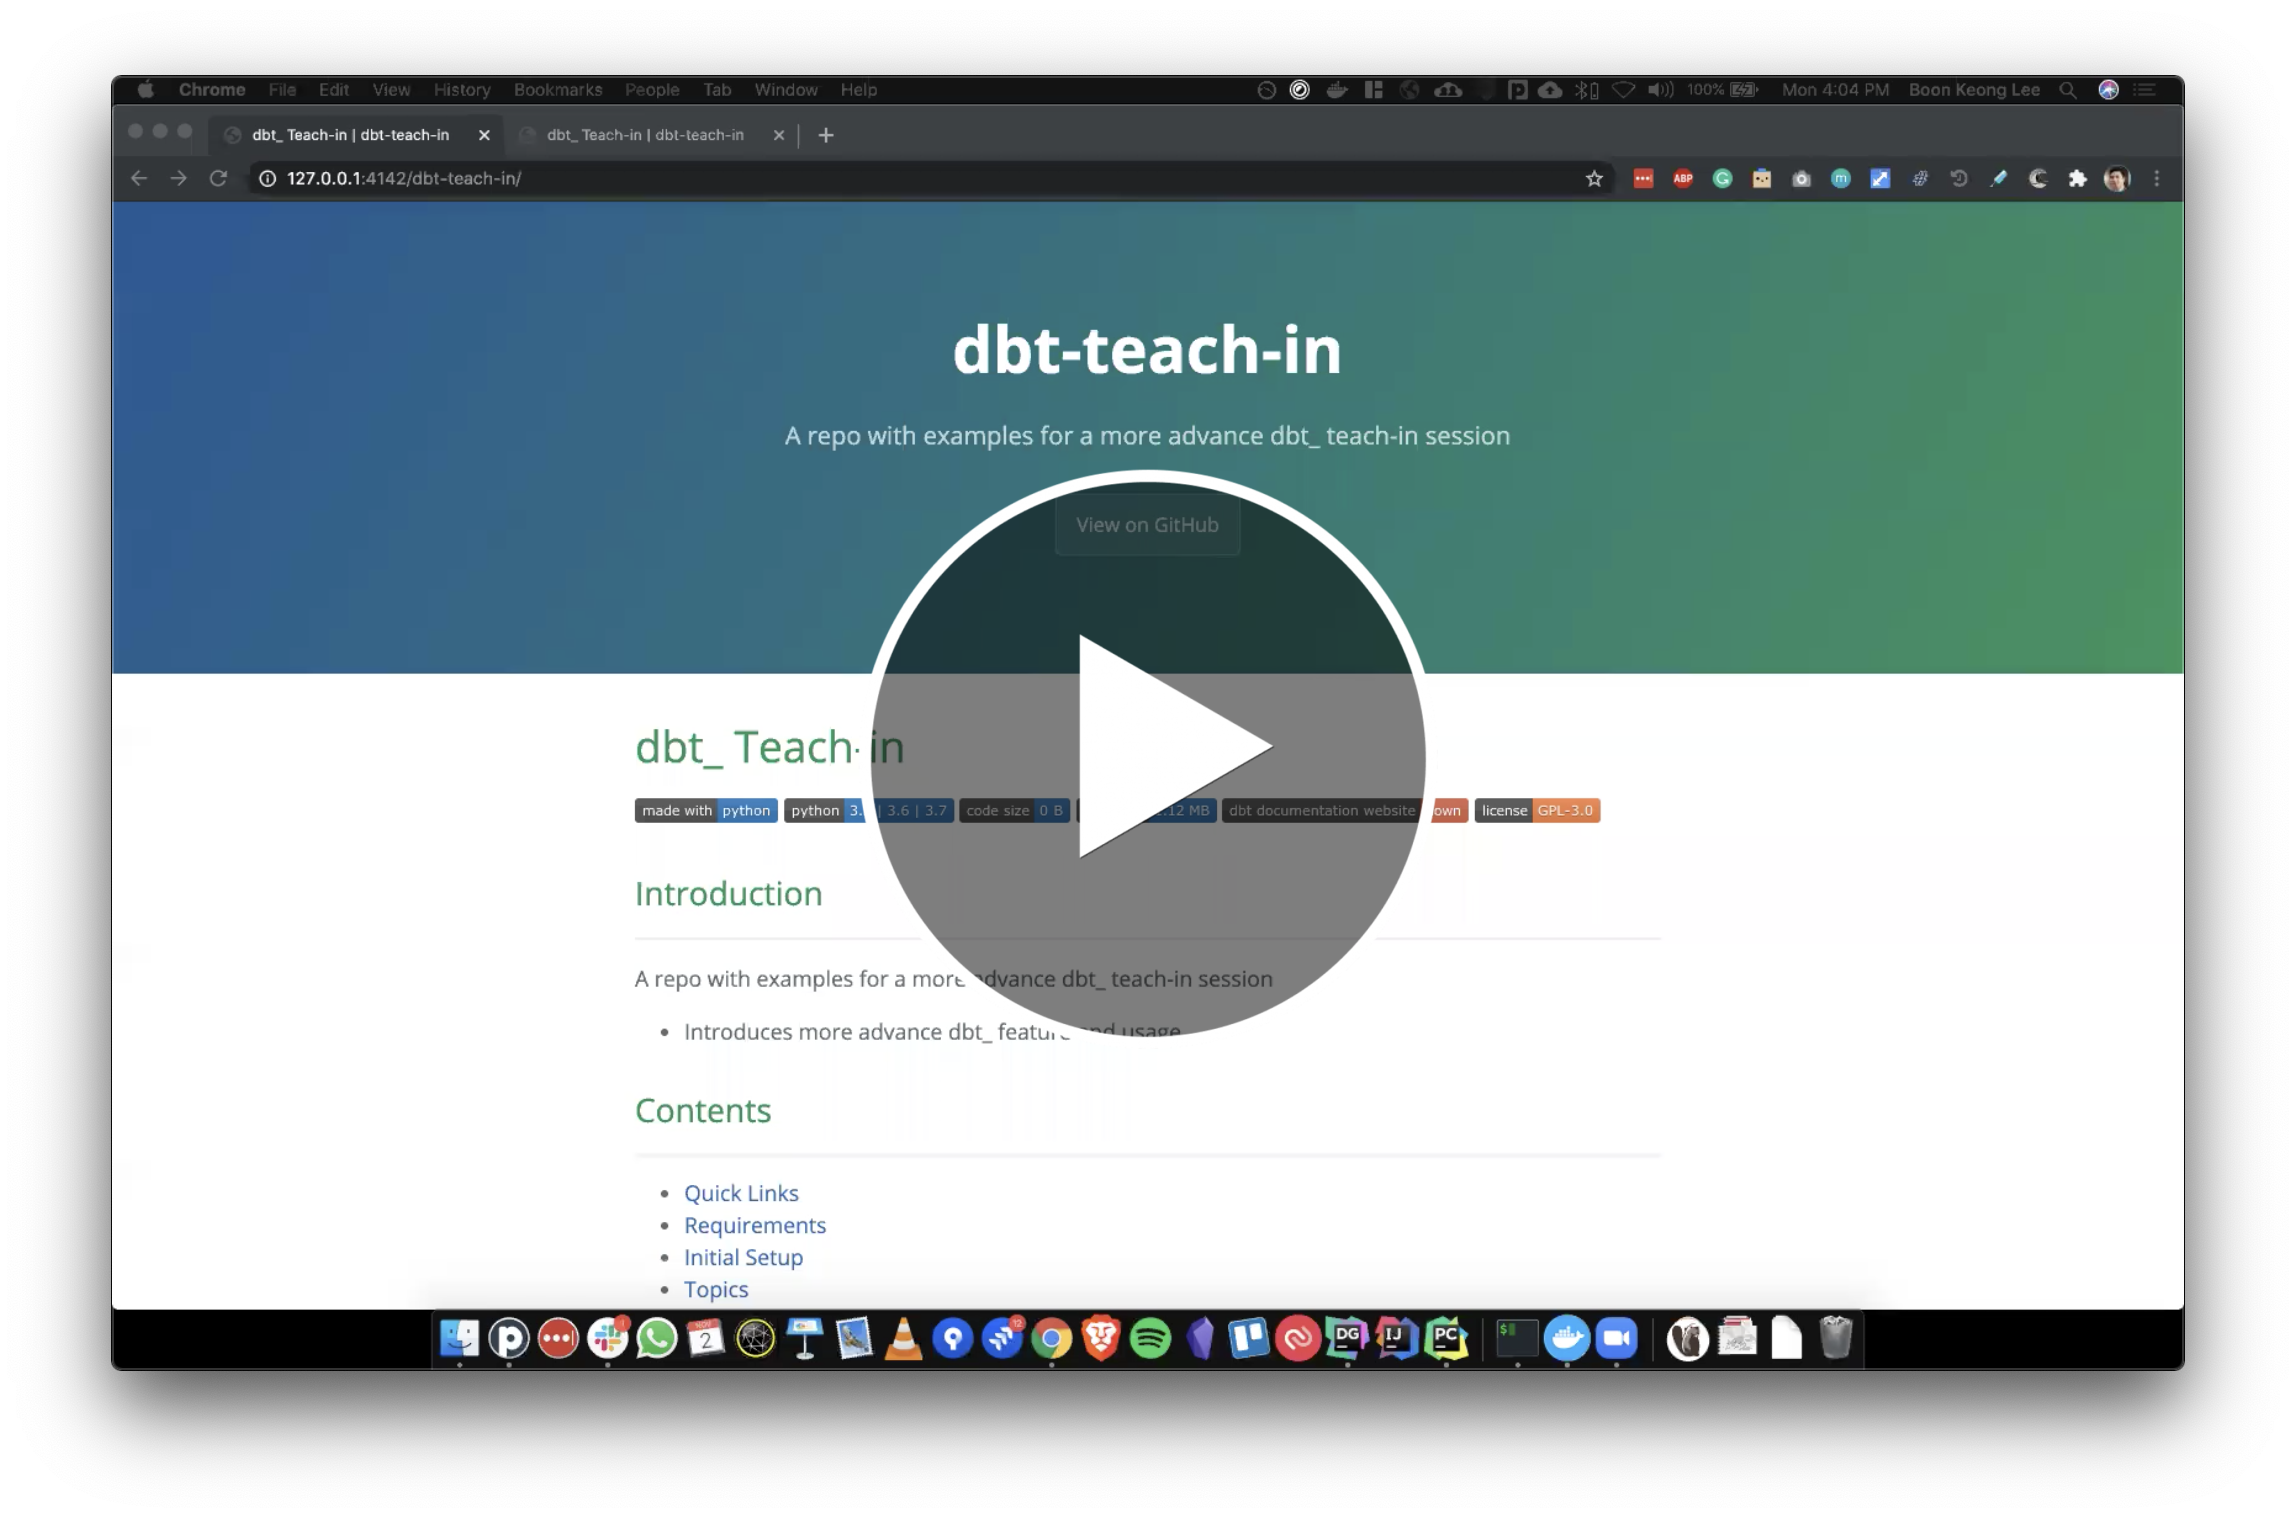 dbt-teach-in-video